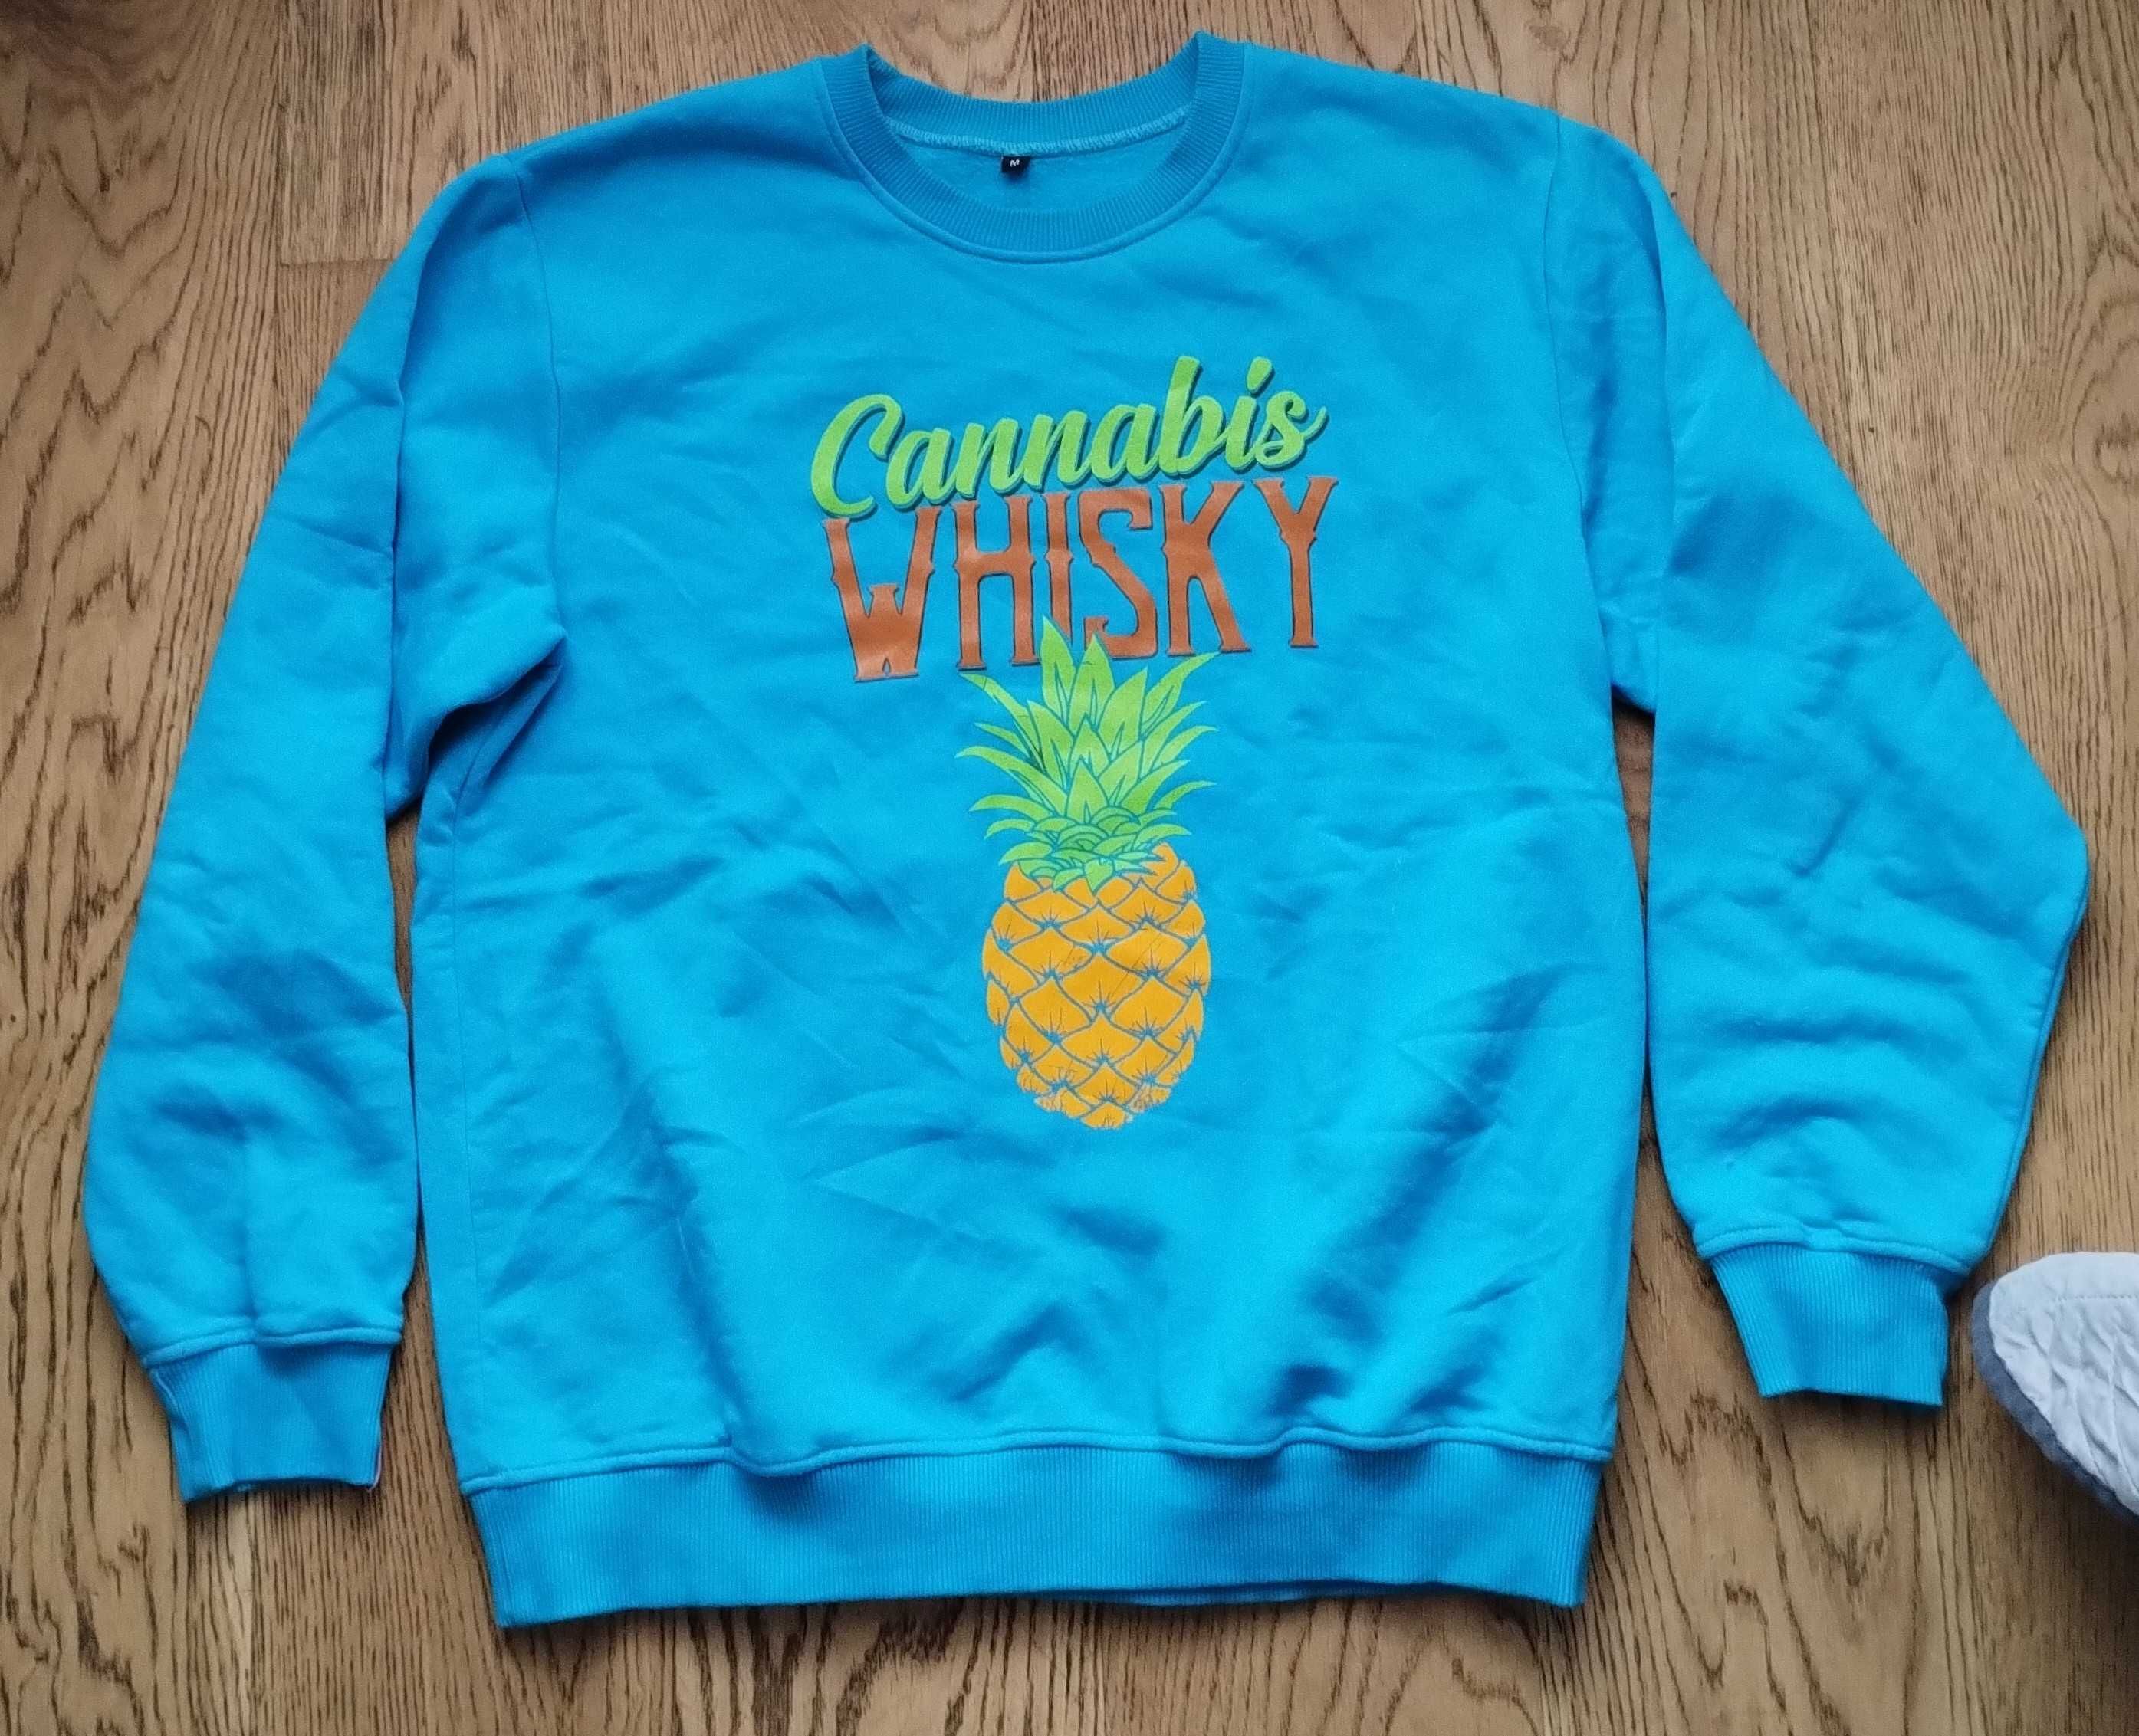 Bluza Cannabis whisky ananas